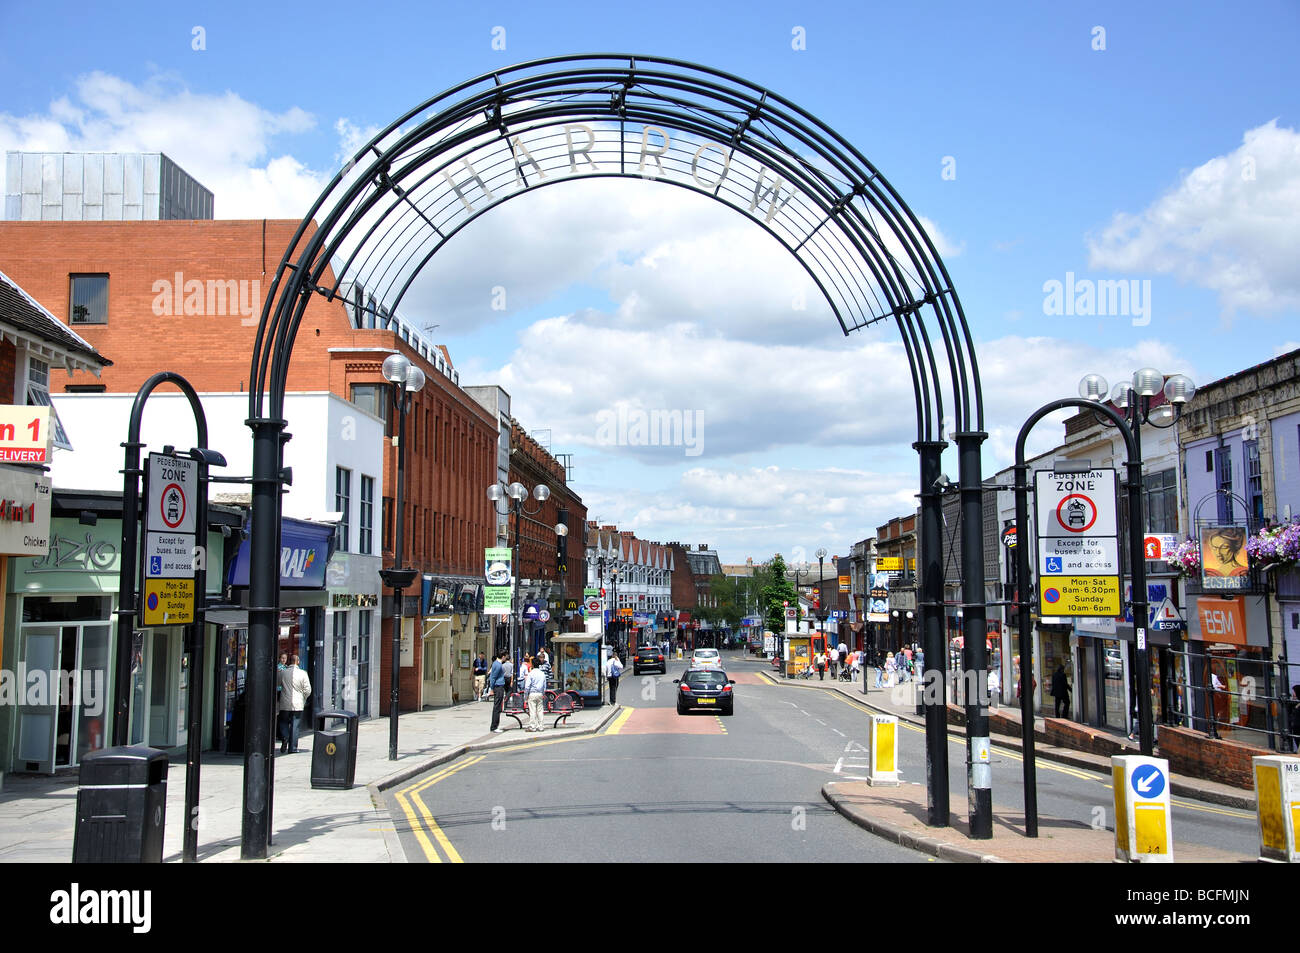 Panneau d'entrée de la ville, Station Road, Harrow, Département de Harrow, Greater London, Angleterre, Royaume-Uni Banque D'Images